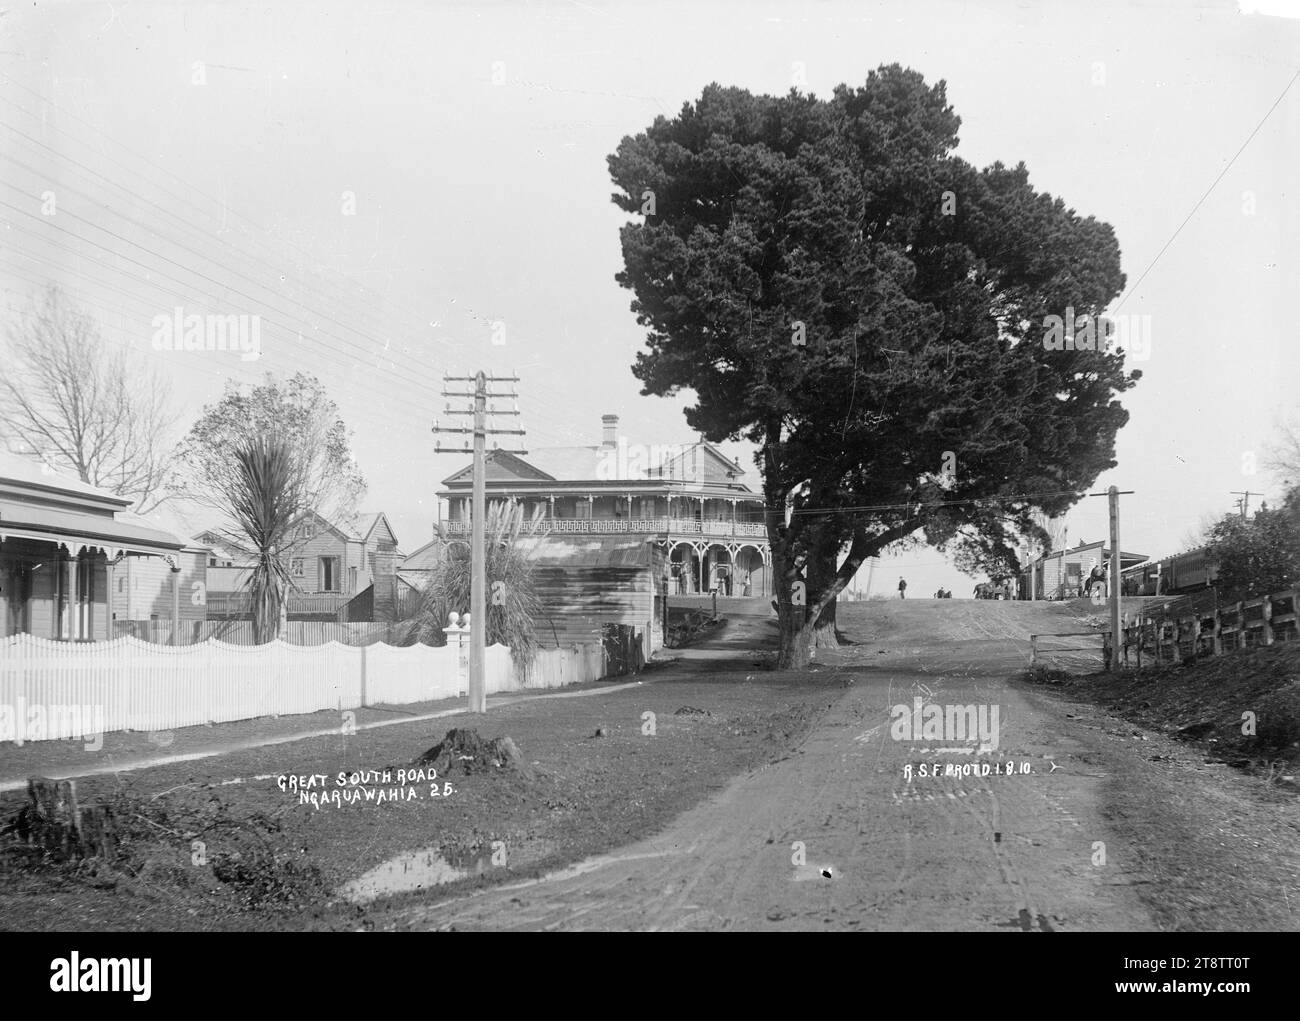 Great South Road in Ngaruawahia, Neuseeland, um 1910 - Foto von Robert Stanley Fleming, Ansicht der Great South Road in Ngaruawahia, Neuseeland. Das Delta Hotel ist im Zentrum zu sehen. Fotografiert von R.S.F. (wahrscheinlich Robert Stanley Fleming, Besitzer des Neuheitsdepots in Ngaruawahia, Neuseeland) Stockfoto